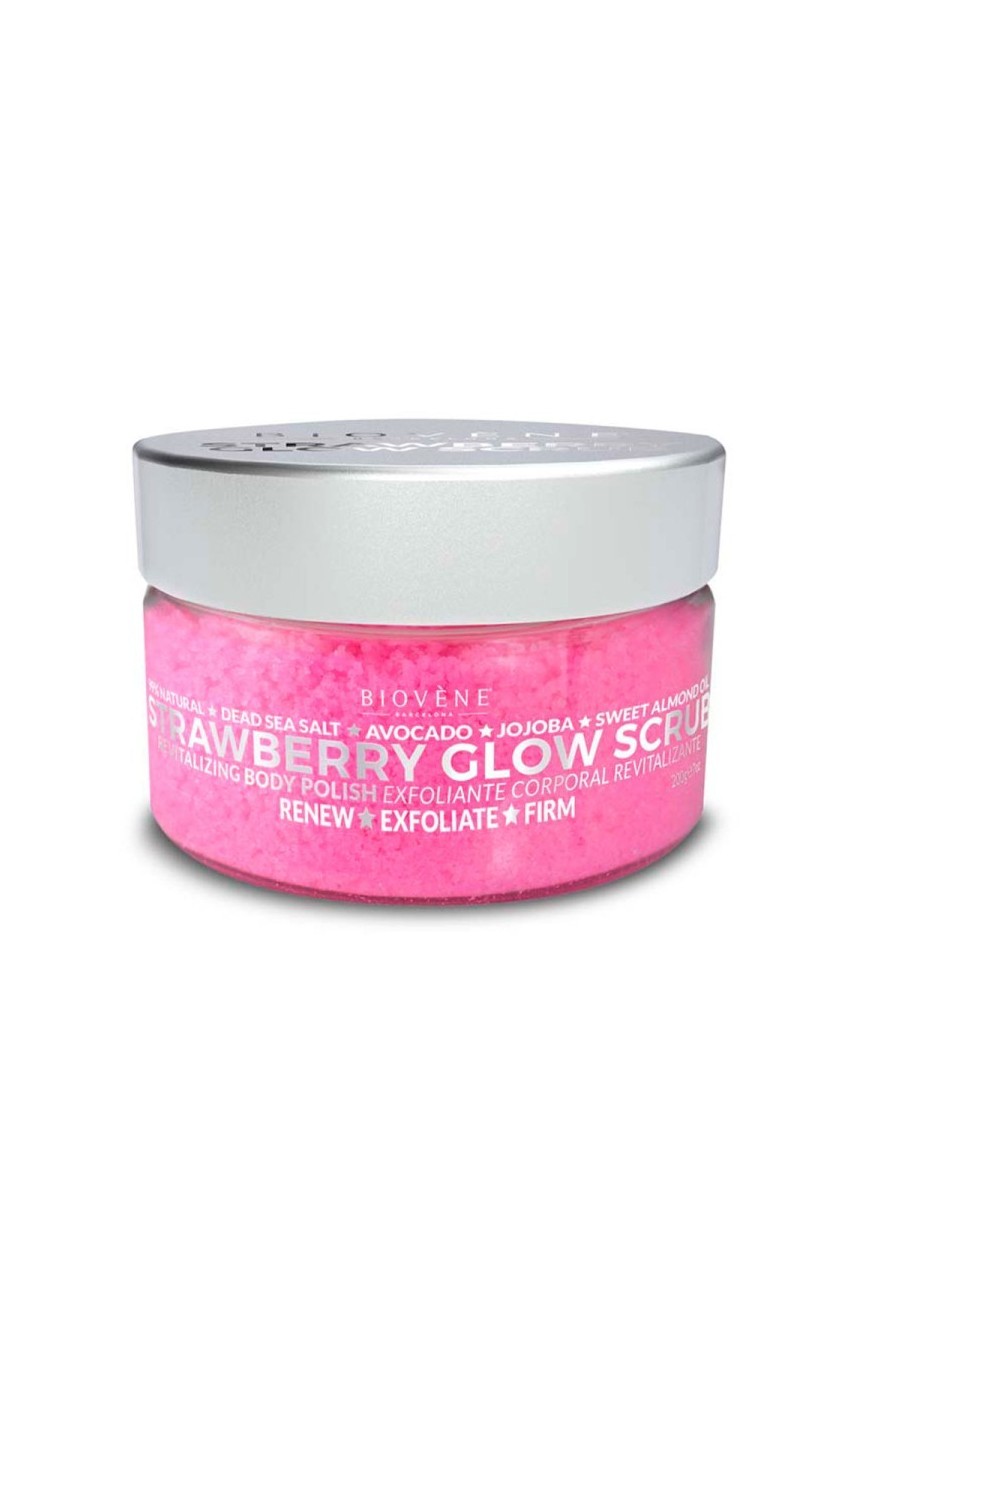 Biovene Strawberry Glow Scrub Revitalizing Body Polish 200g